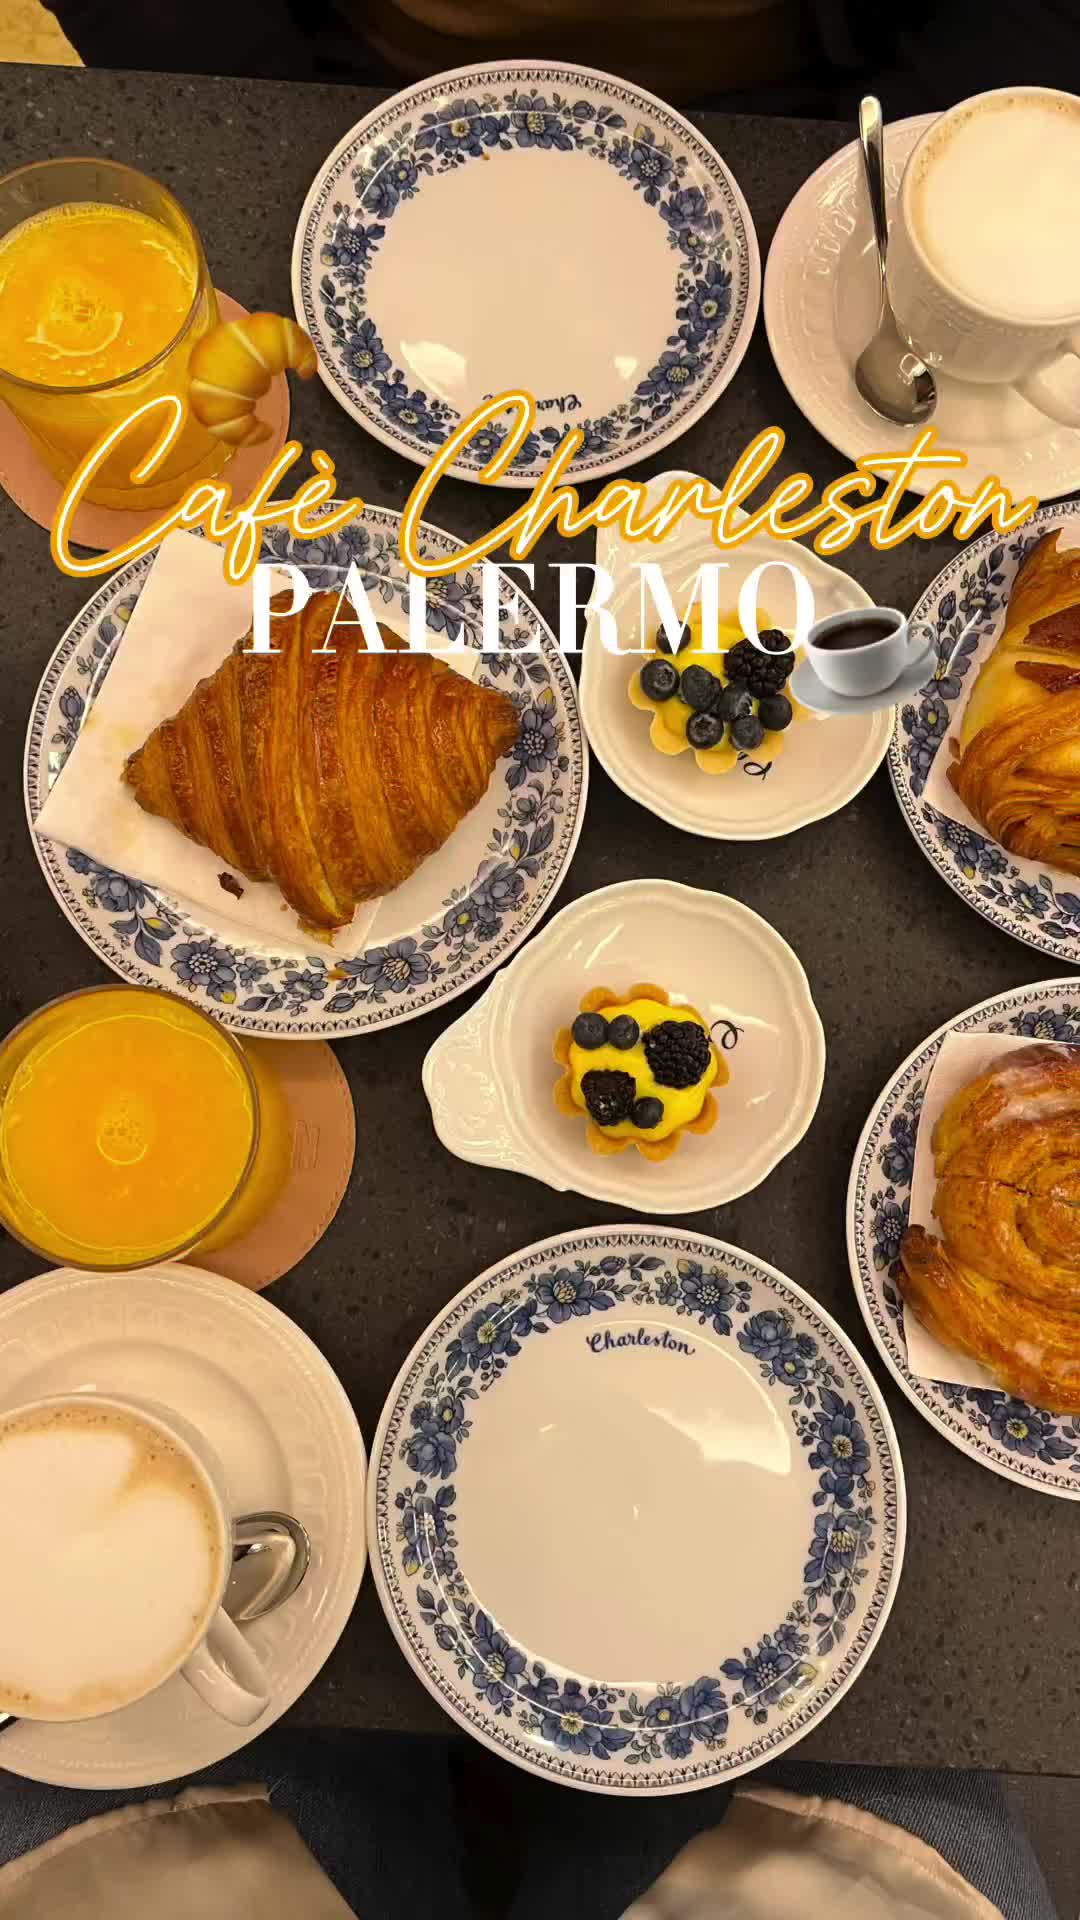 Discover Palermo's Best Viennoiserie Breakfast